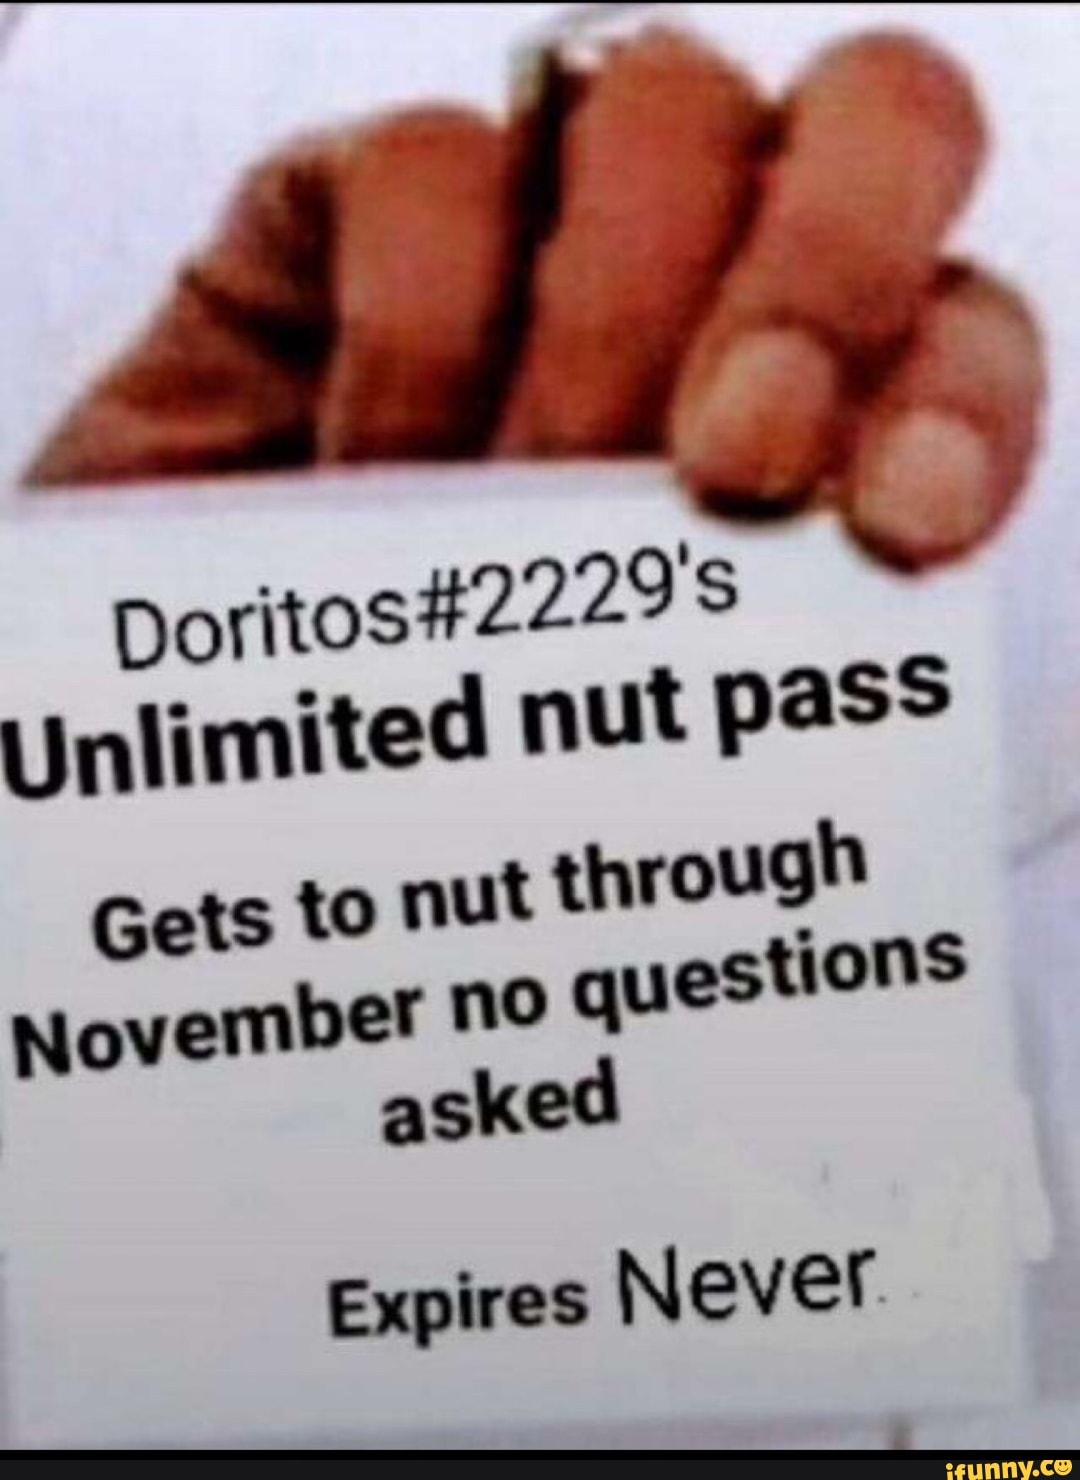 Doritos 2229 Unlimited nut pass Gets to nut through November no